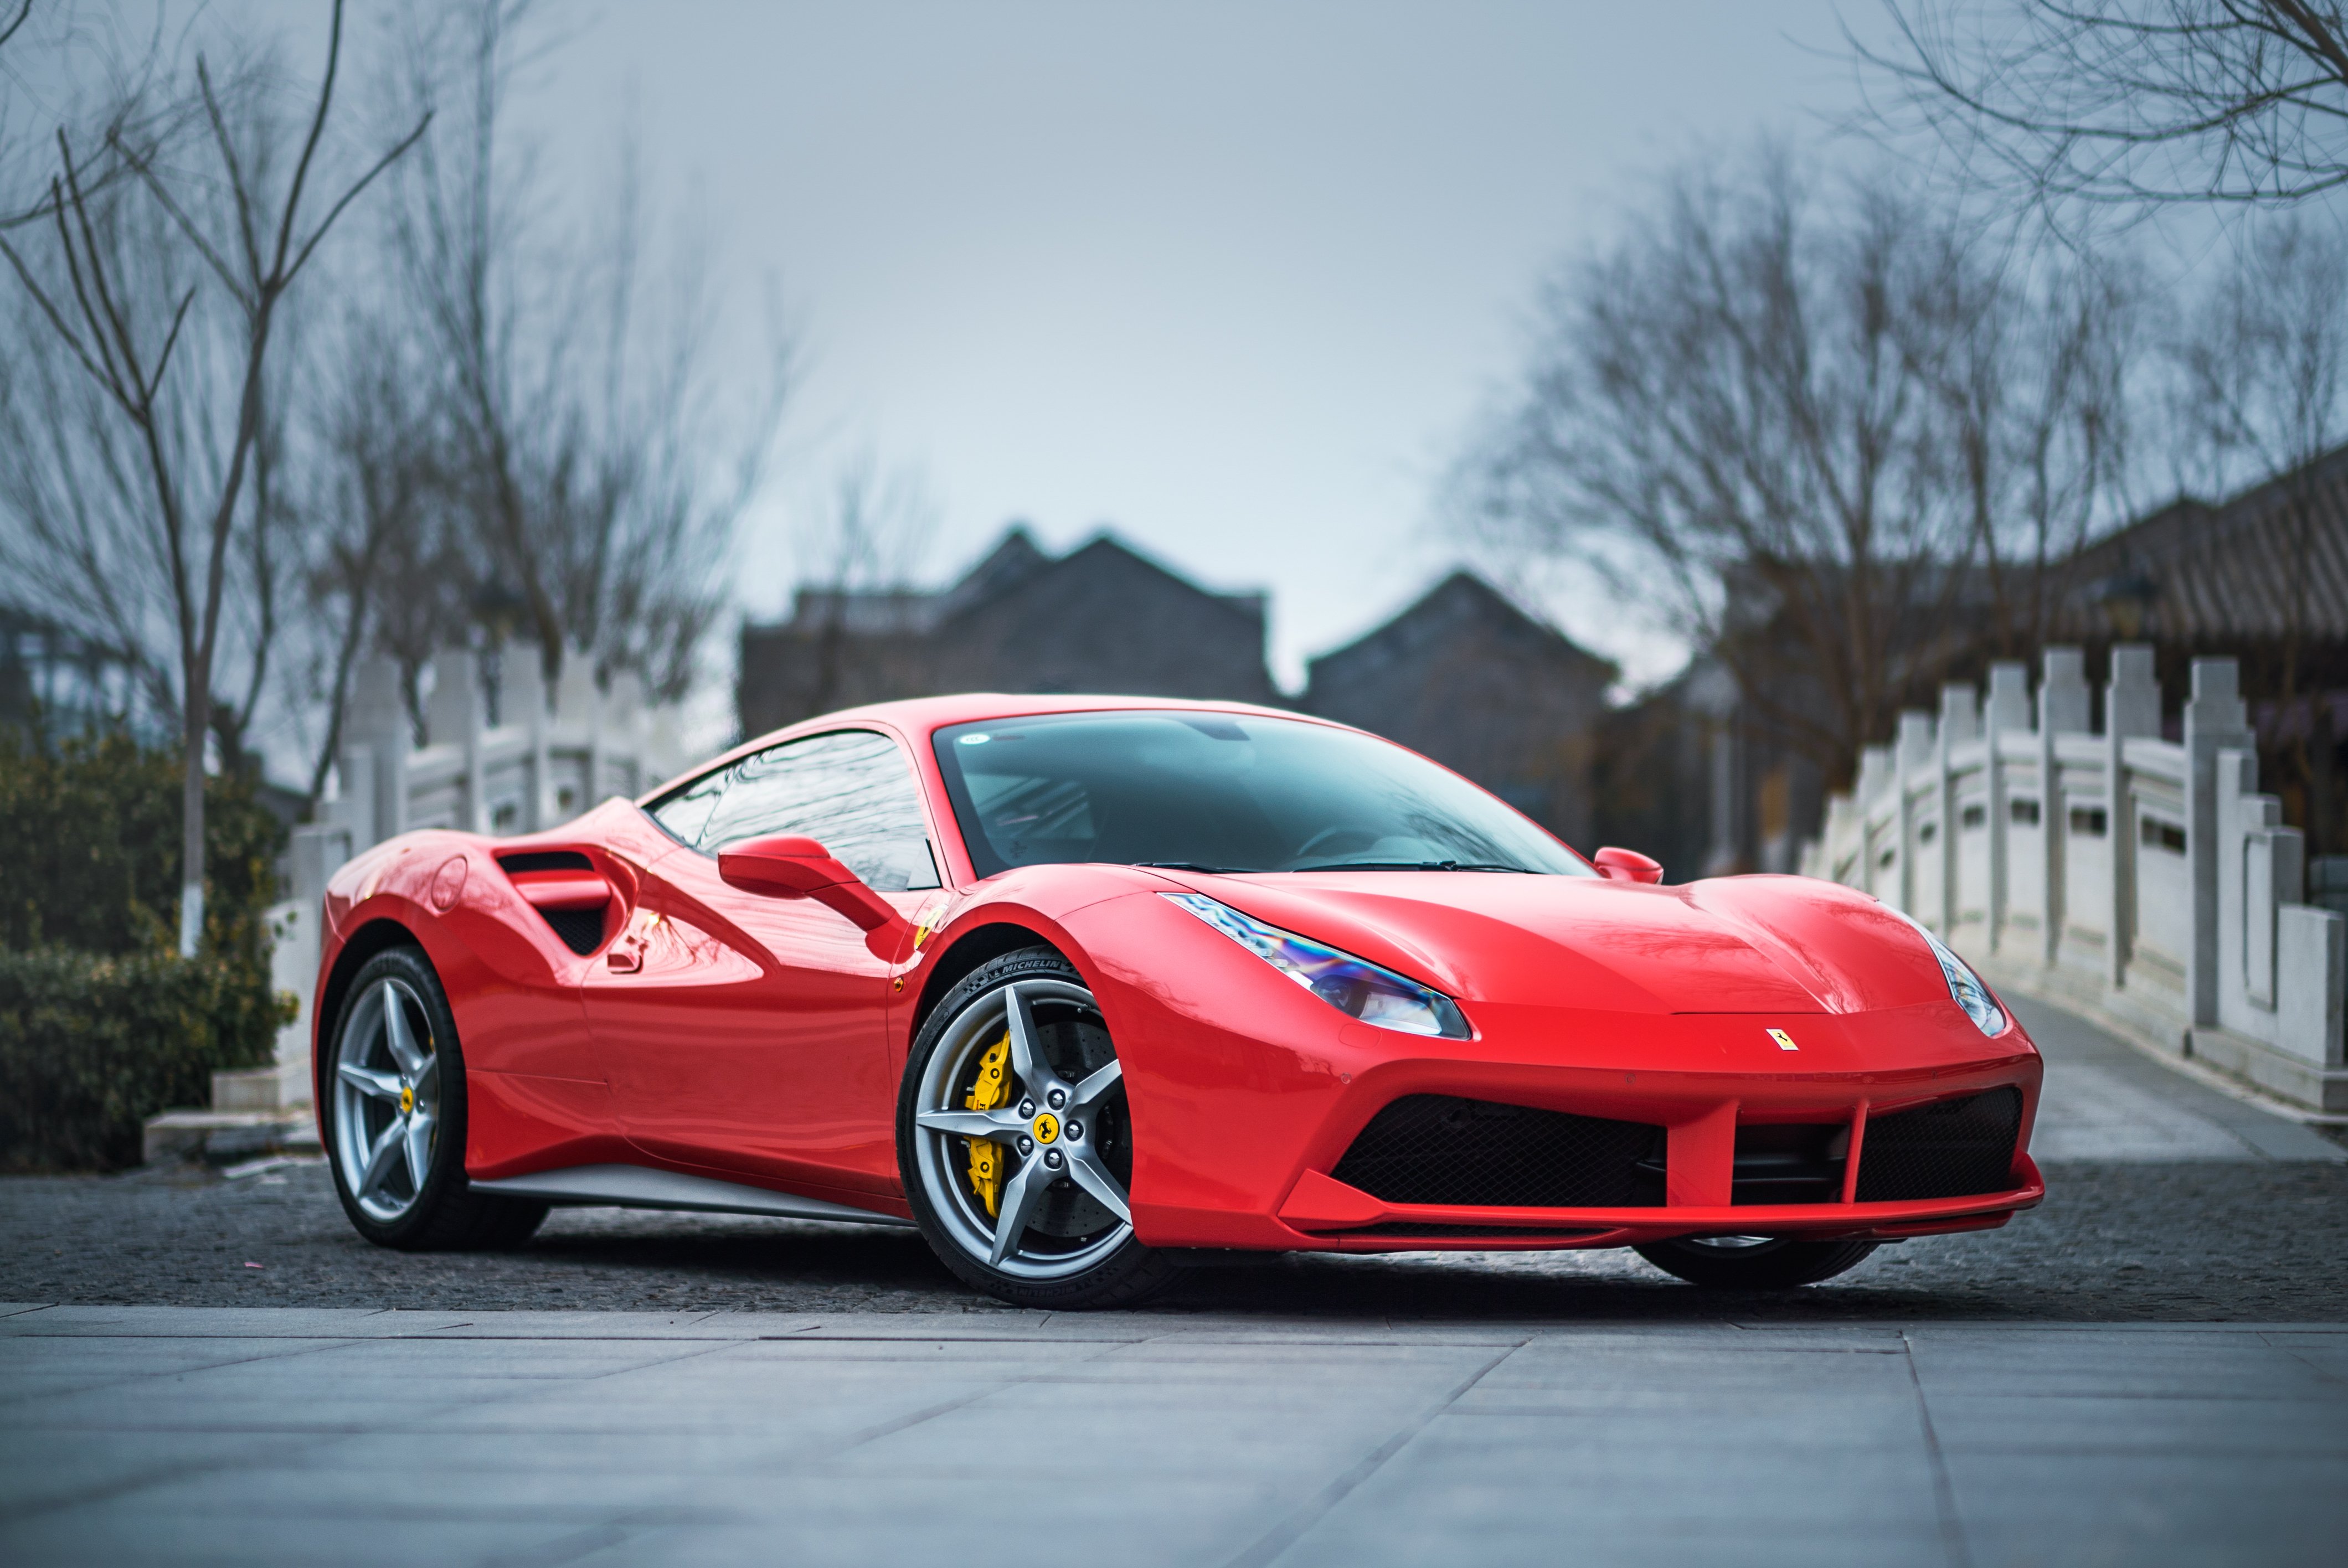 A red Ferrari | Source: Shutterstock